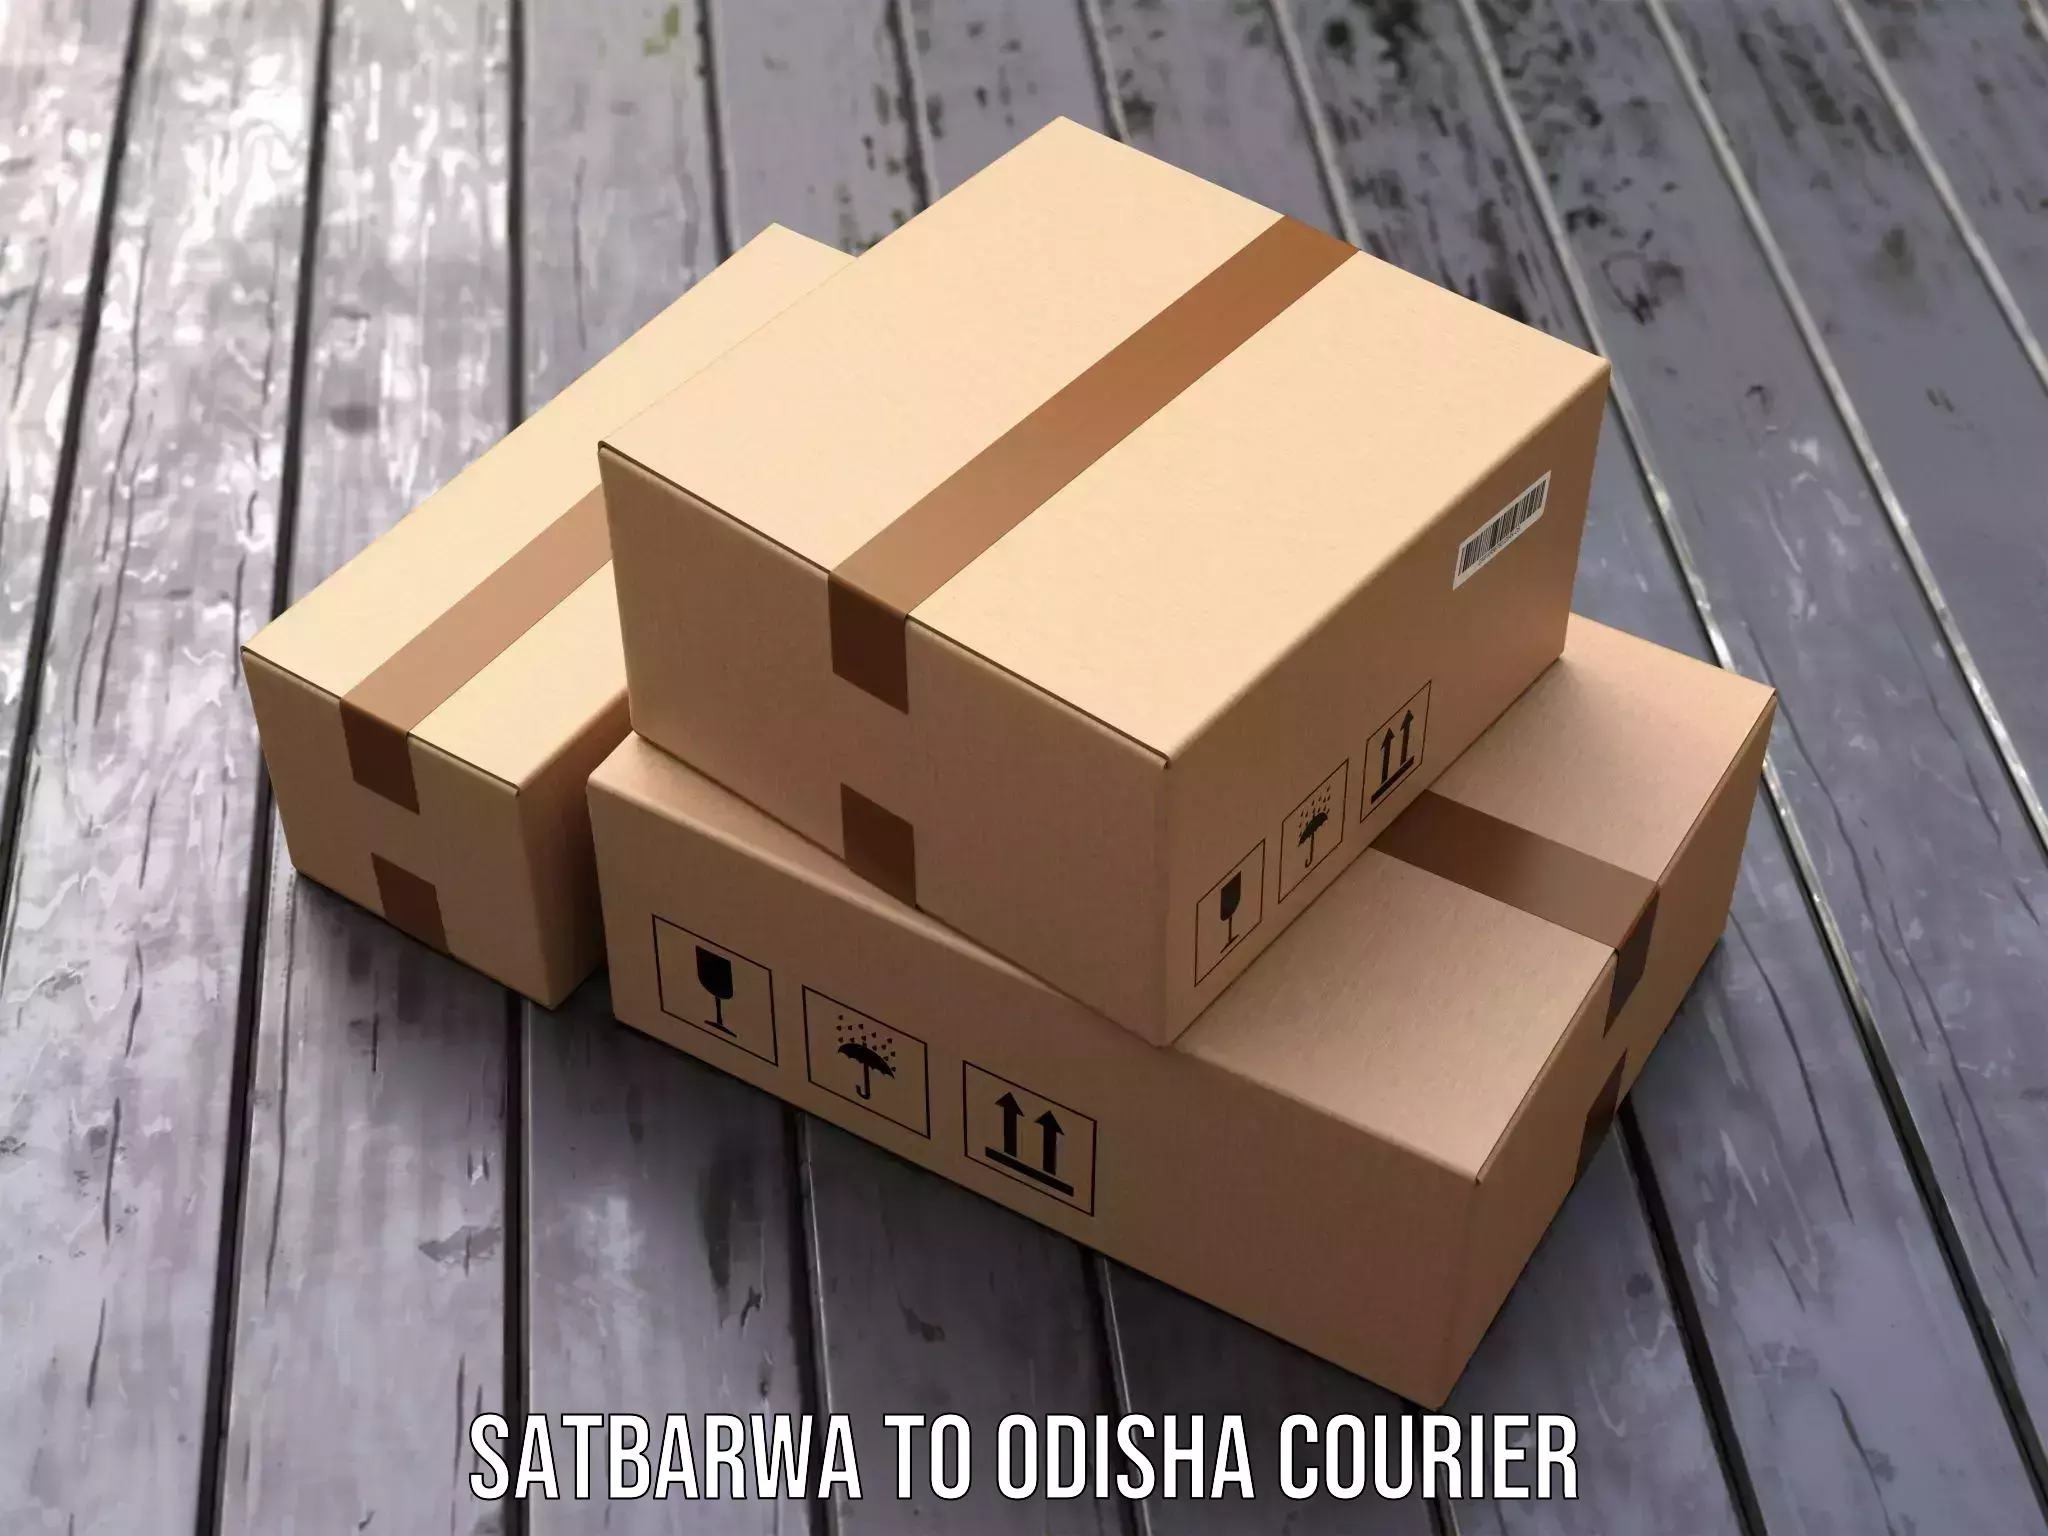 Logistics service provider Satbarwa to Odisha